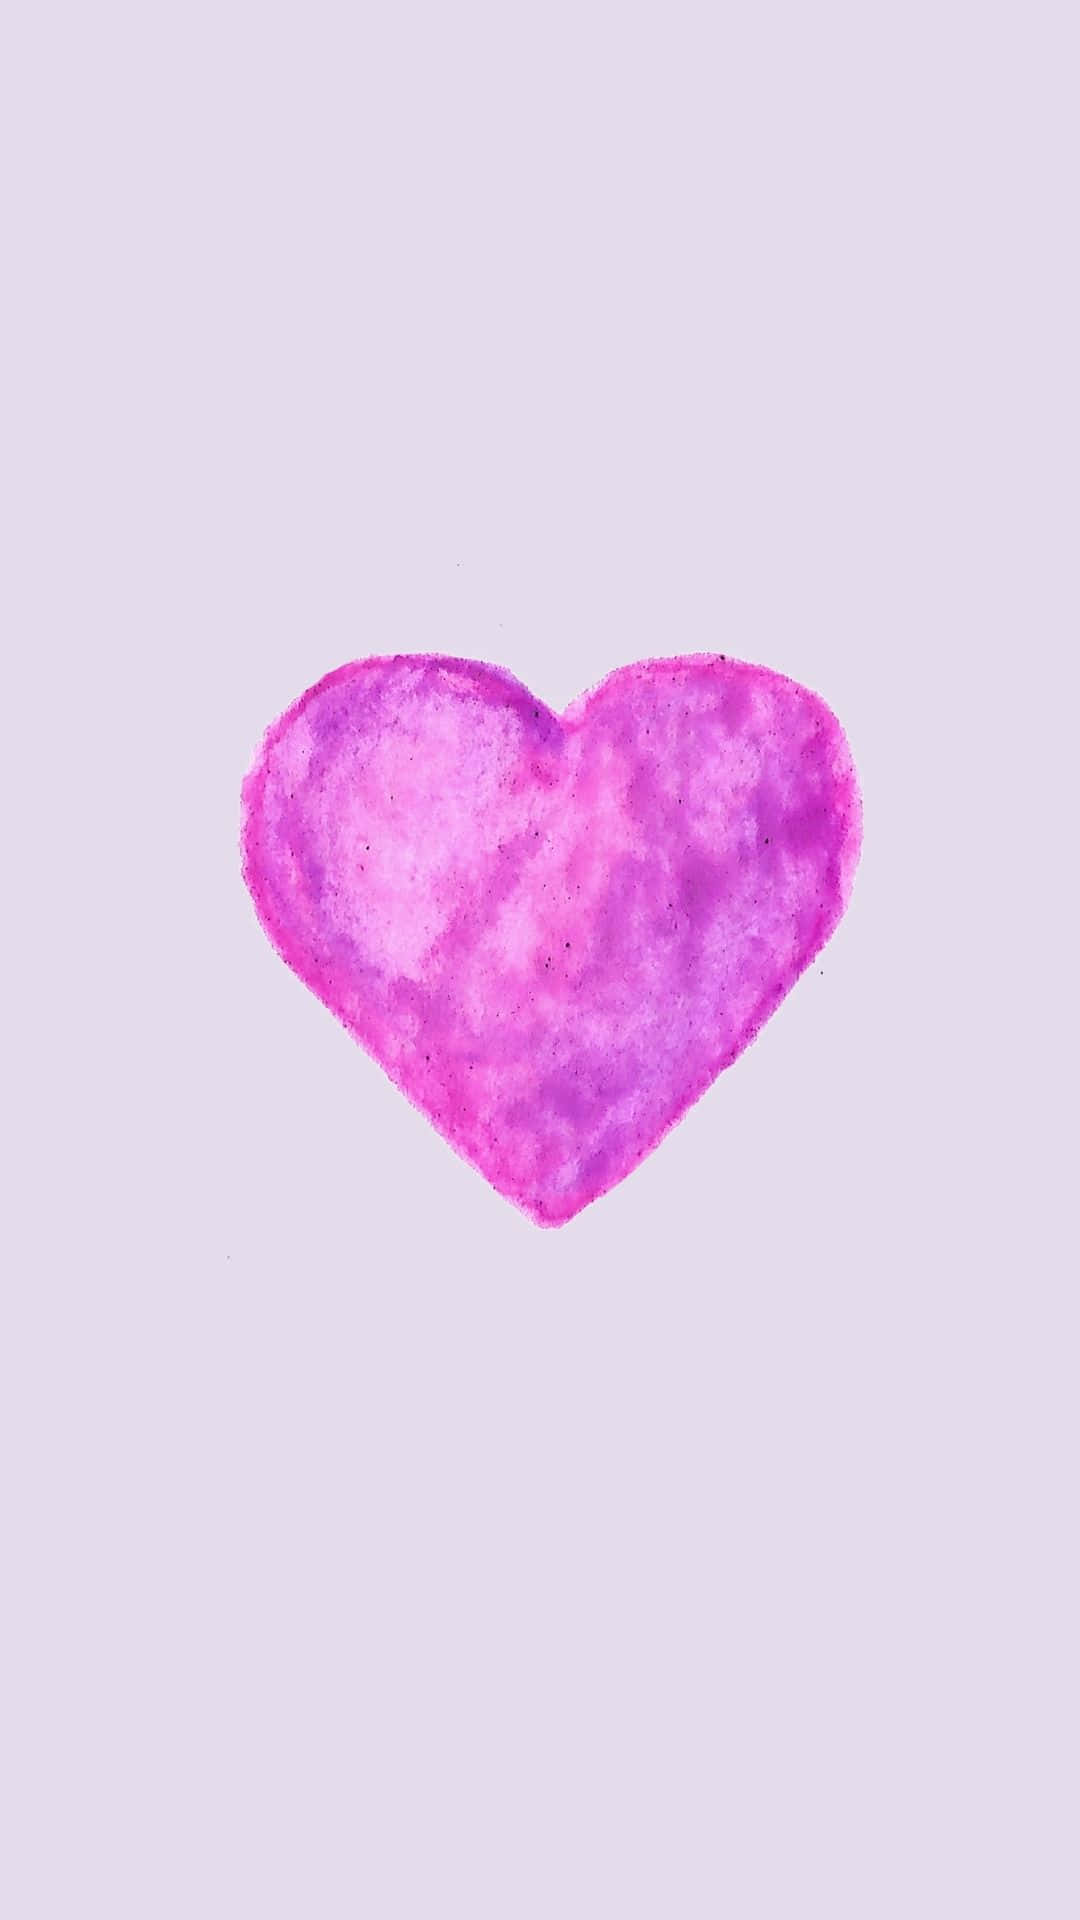 Mostrandotu Agradecimiento Hacia Los Héroes En Todas Partes Con Un Corazón Púrpura.